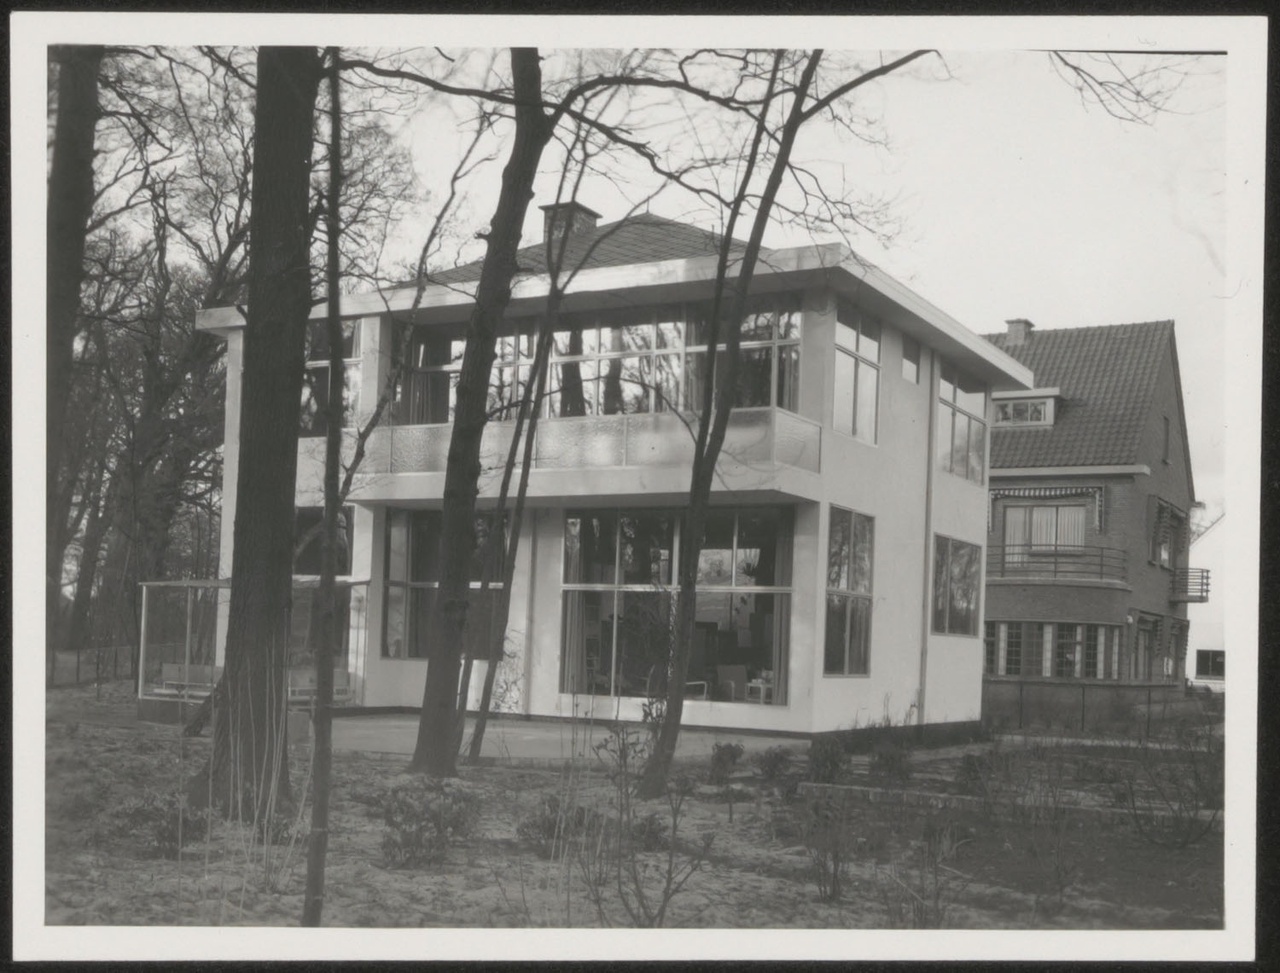 Afbeelding van woning Hillebrand, ca.1935, tuinkant zijde schuin